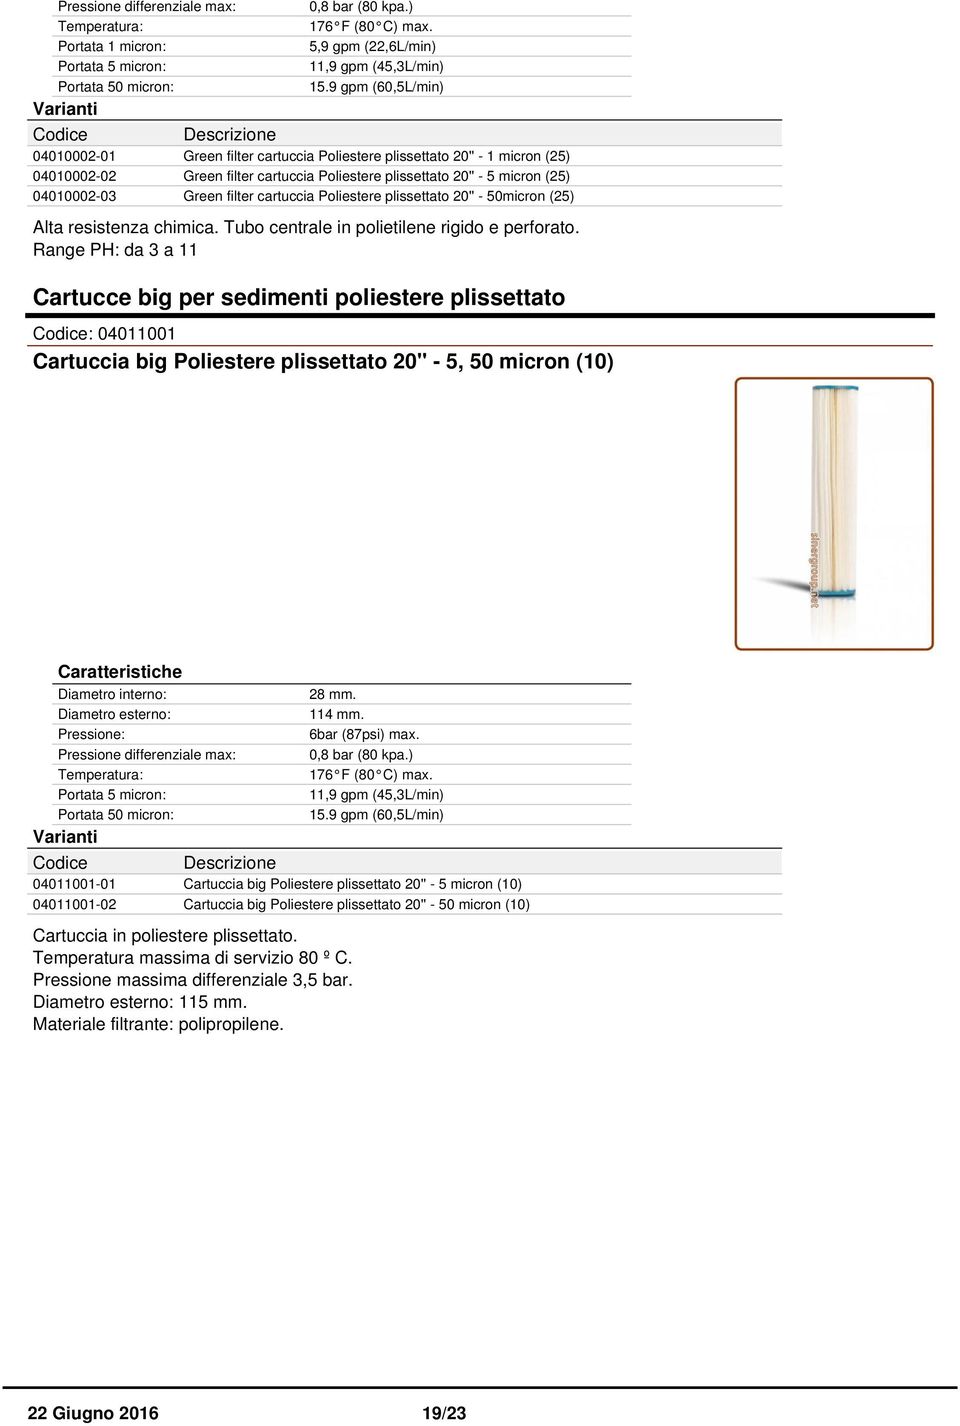 filter cartuccia Poliestere plissettato 20'' - 50micron (25) Alta resistenza chimica. Tubo centrale in polietilene rigido e perforato.